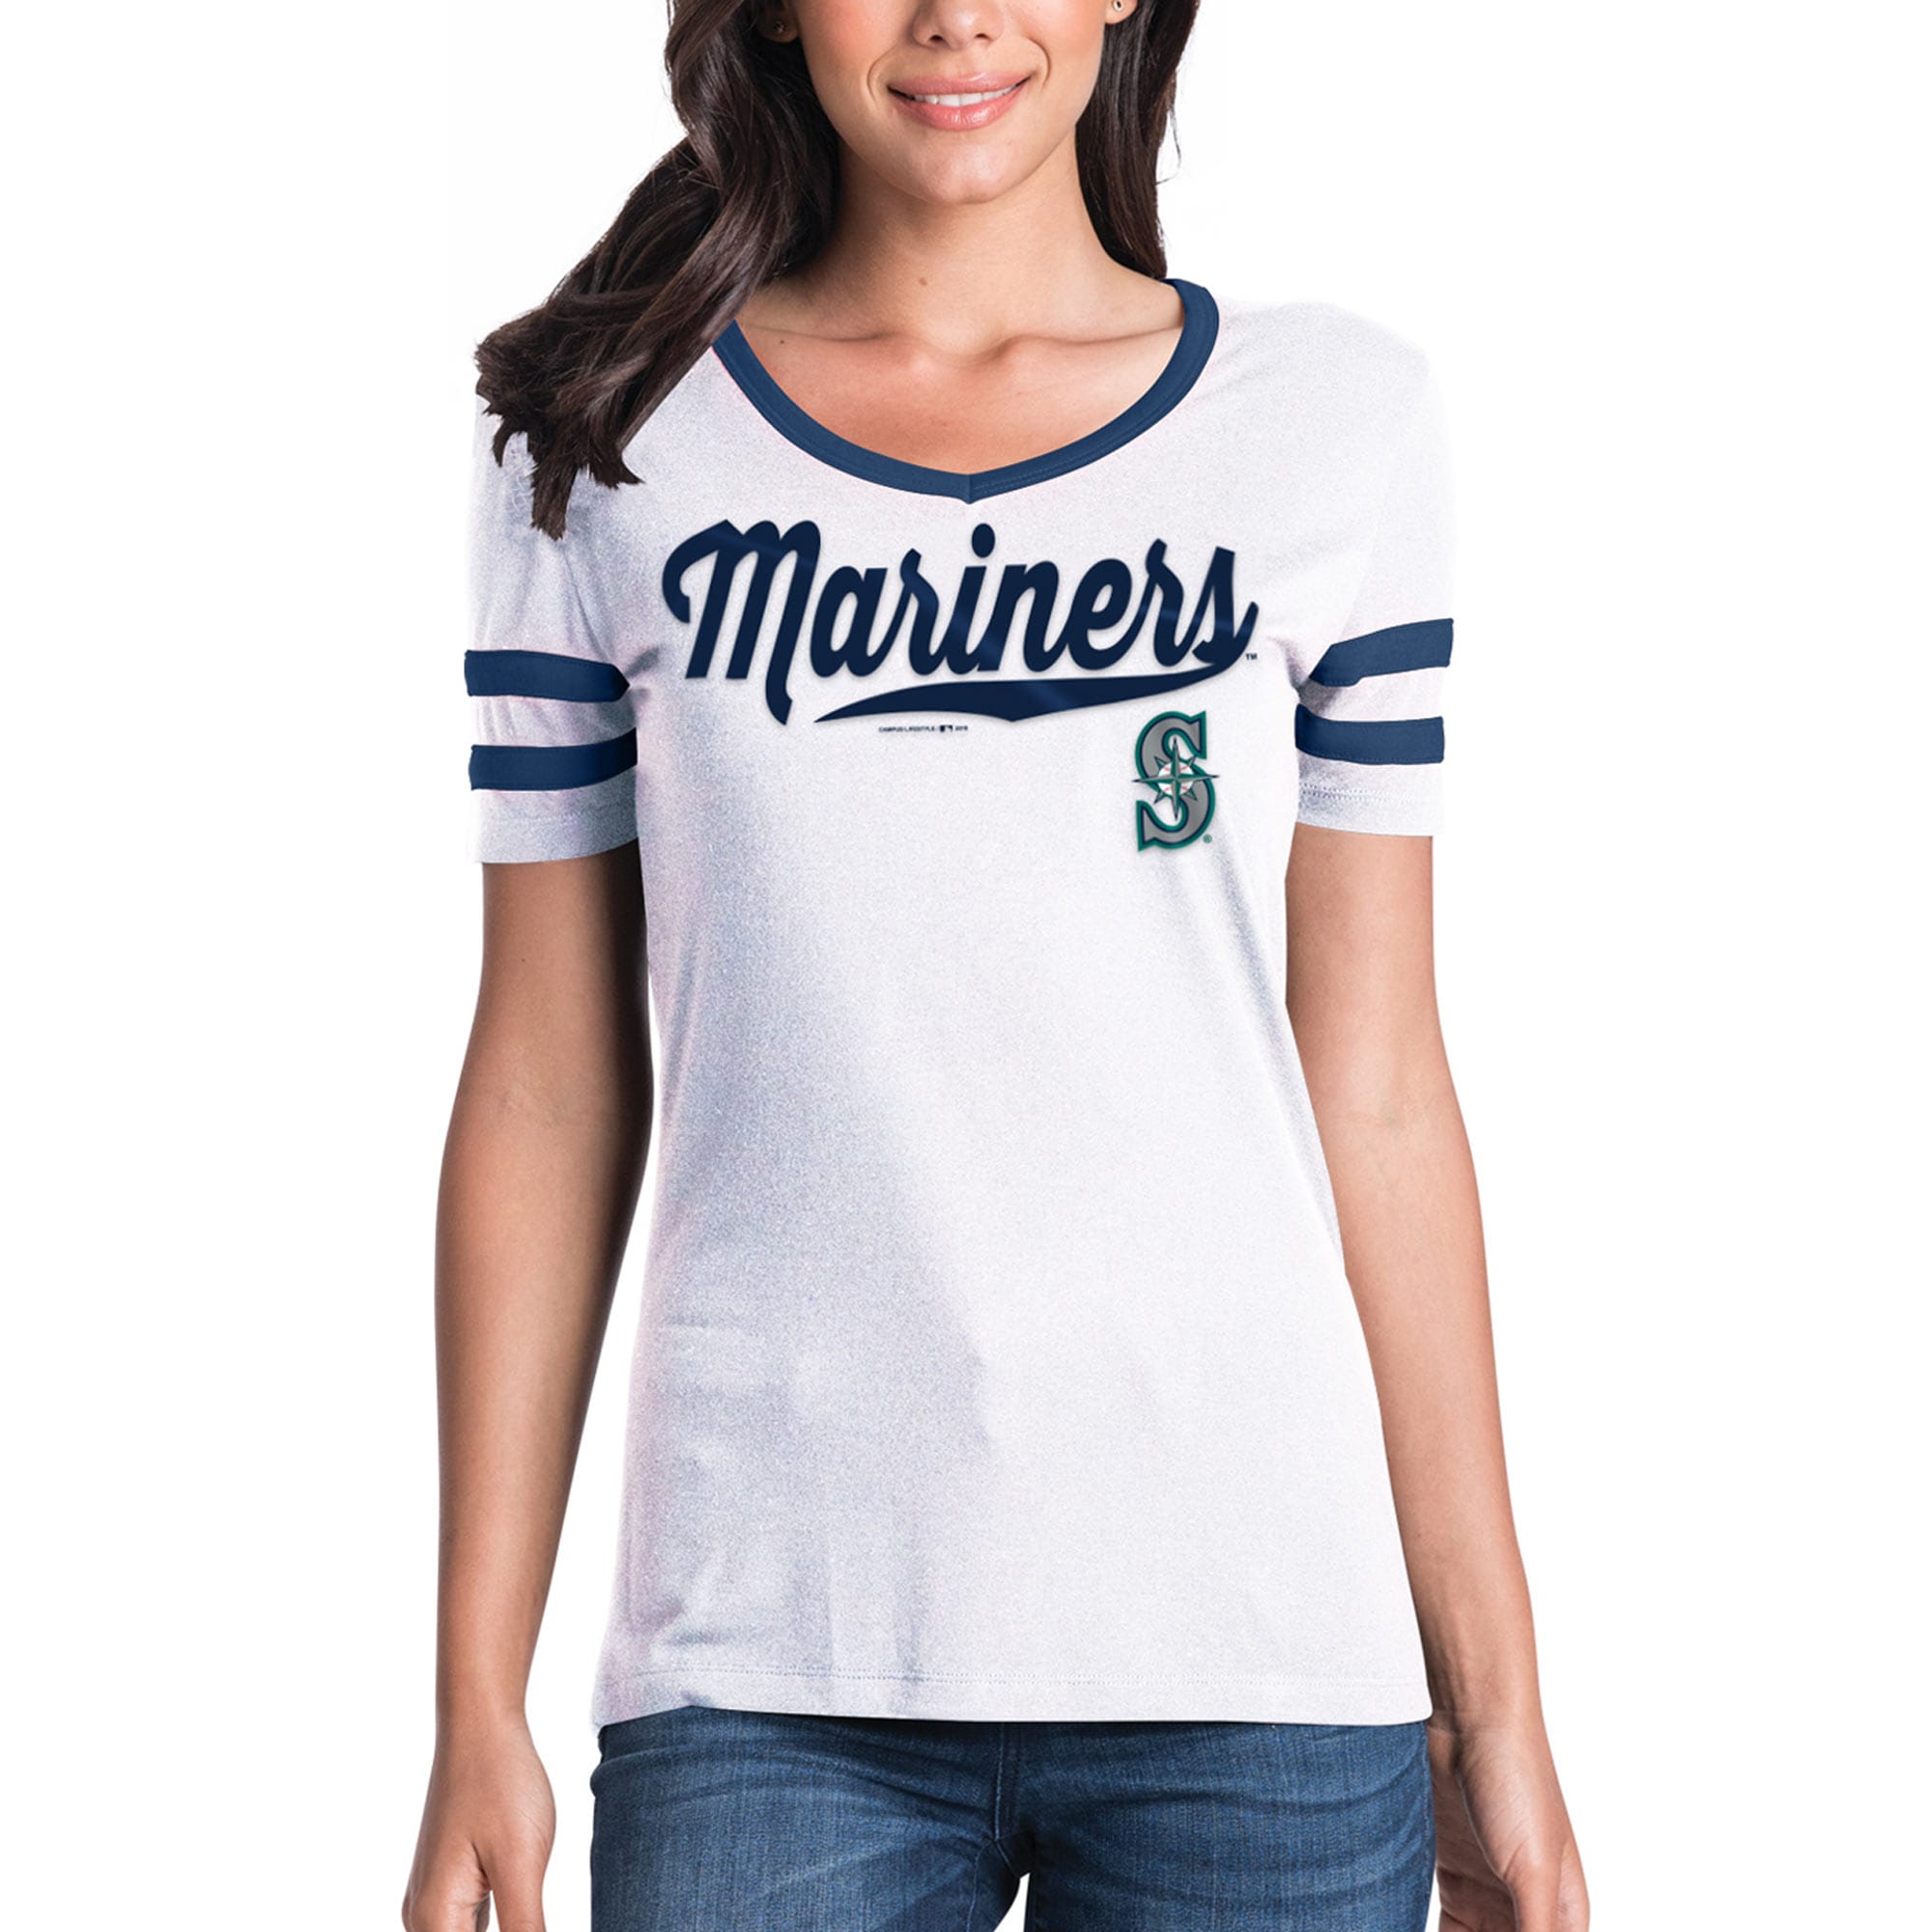 women's mariners jersey